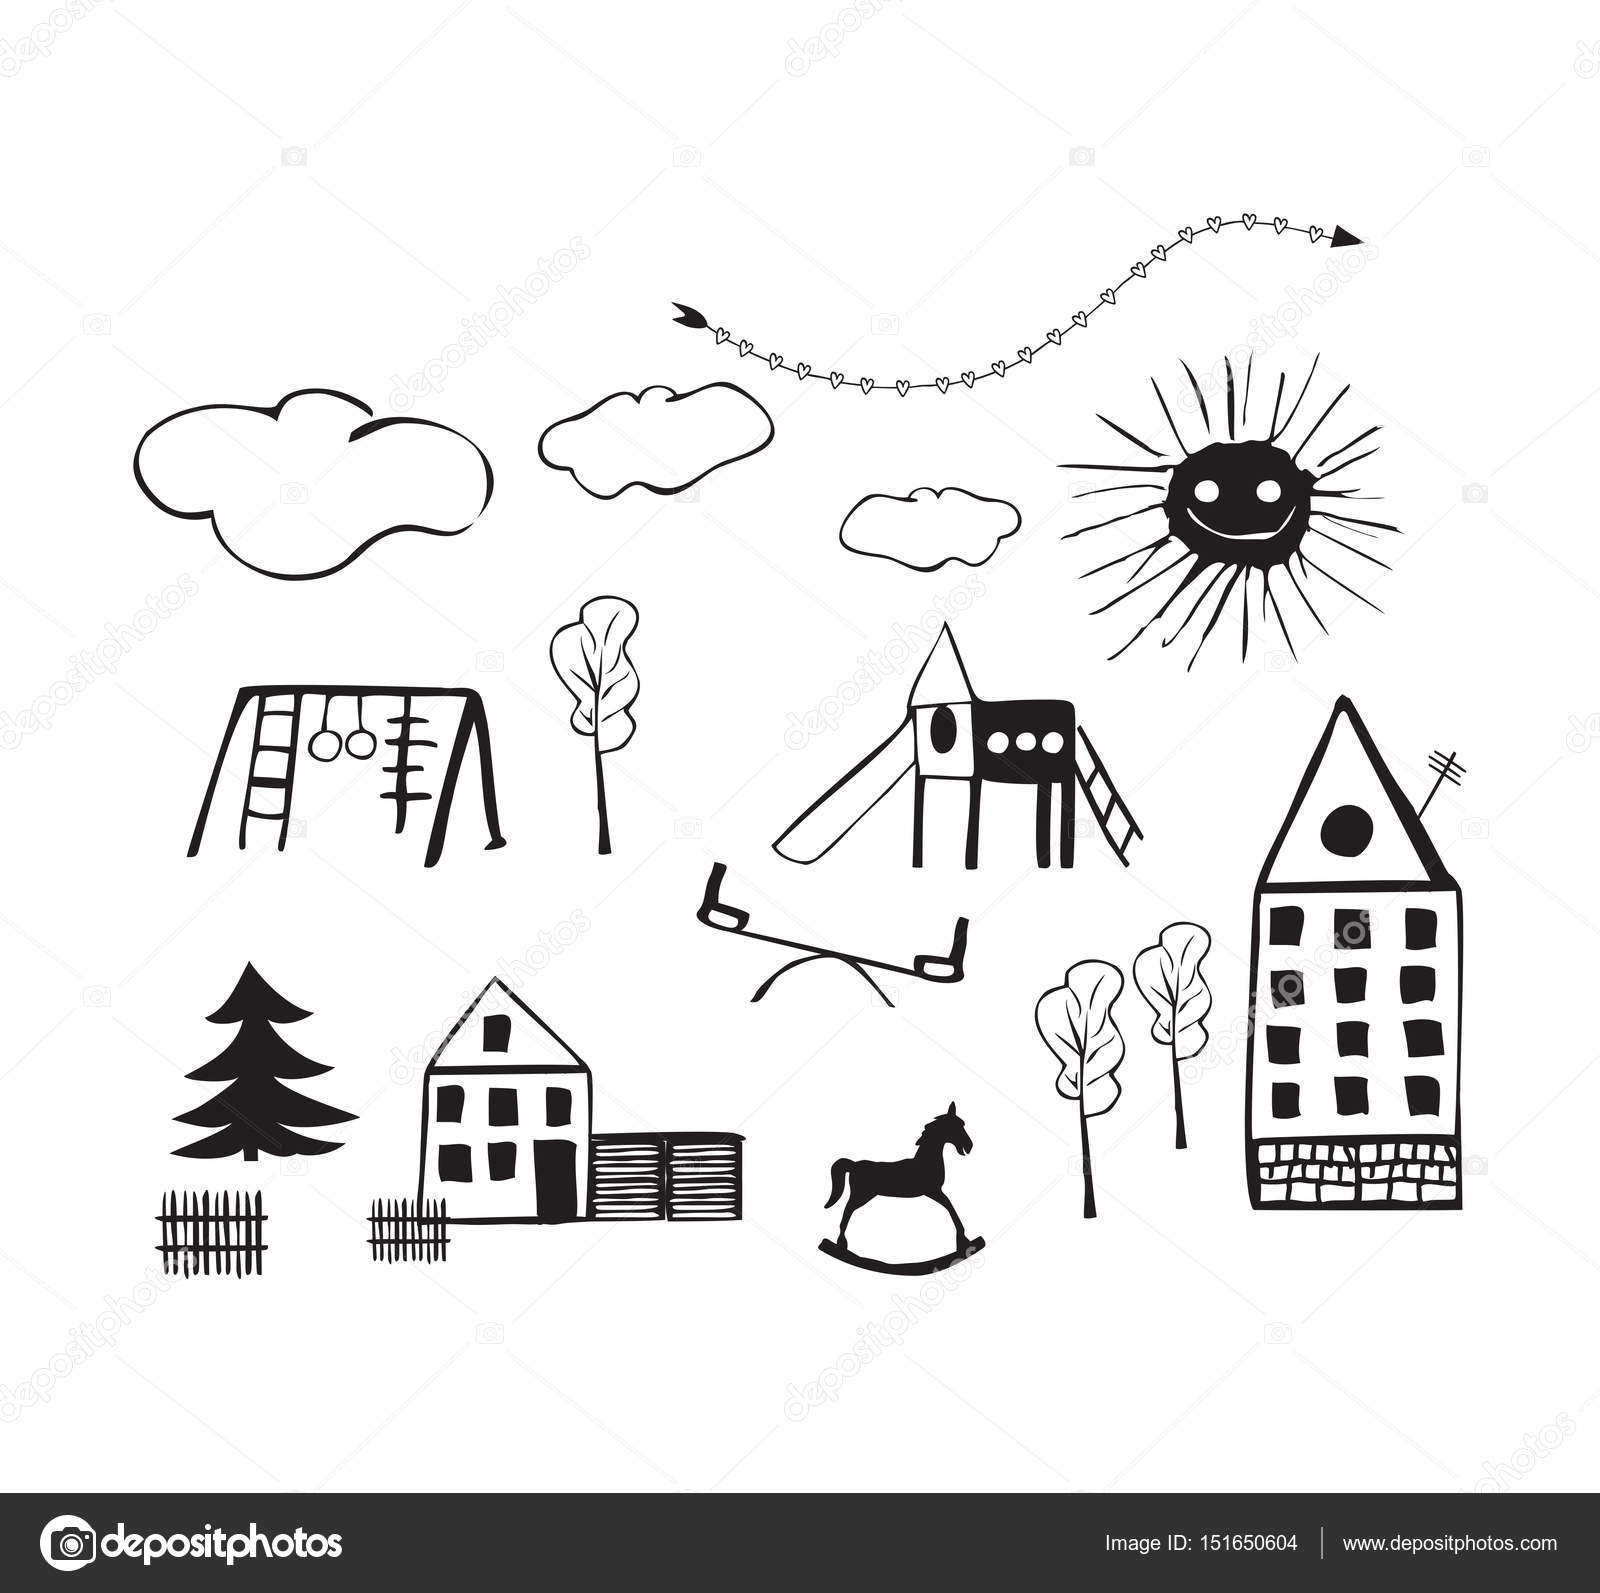 Spiksplinternieuw Kinderen tekeningen van kinderspeelplaatsen, huizen, bomen, wolken NZ-59